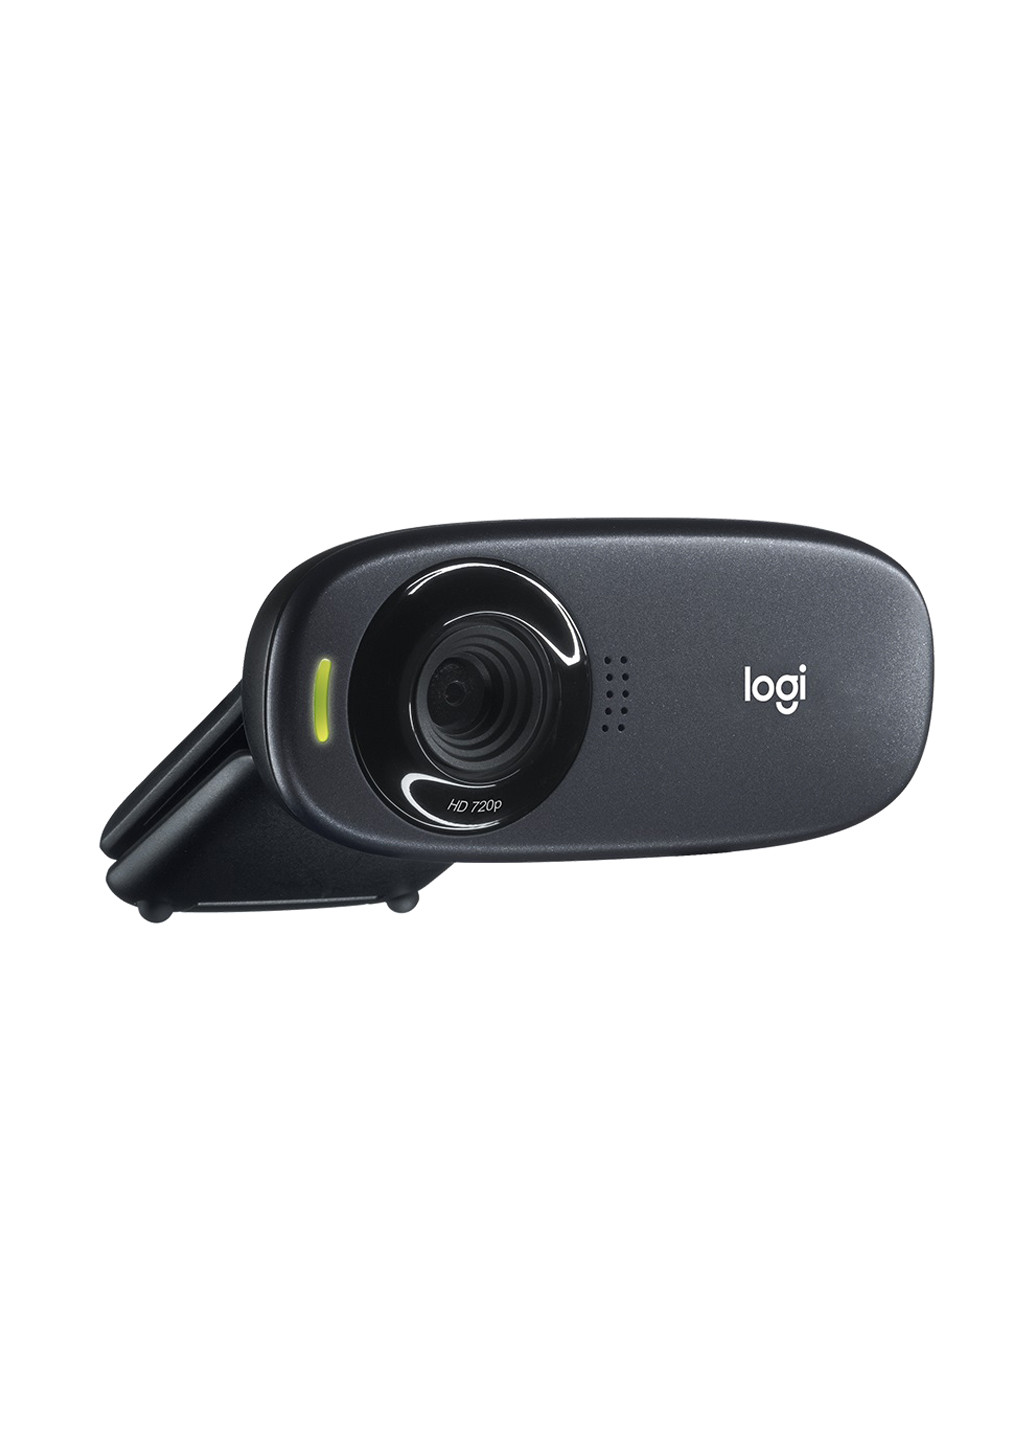 ВЕБ- камера HD Webcam C310 - EMEA Logitech веб- камера logitech hd webcam c310 - emea (l960-001065) (135463222)